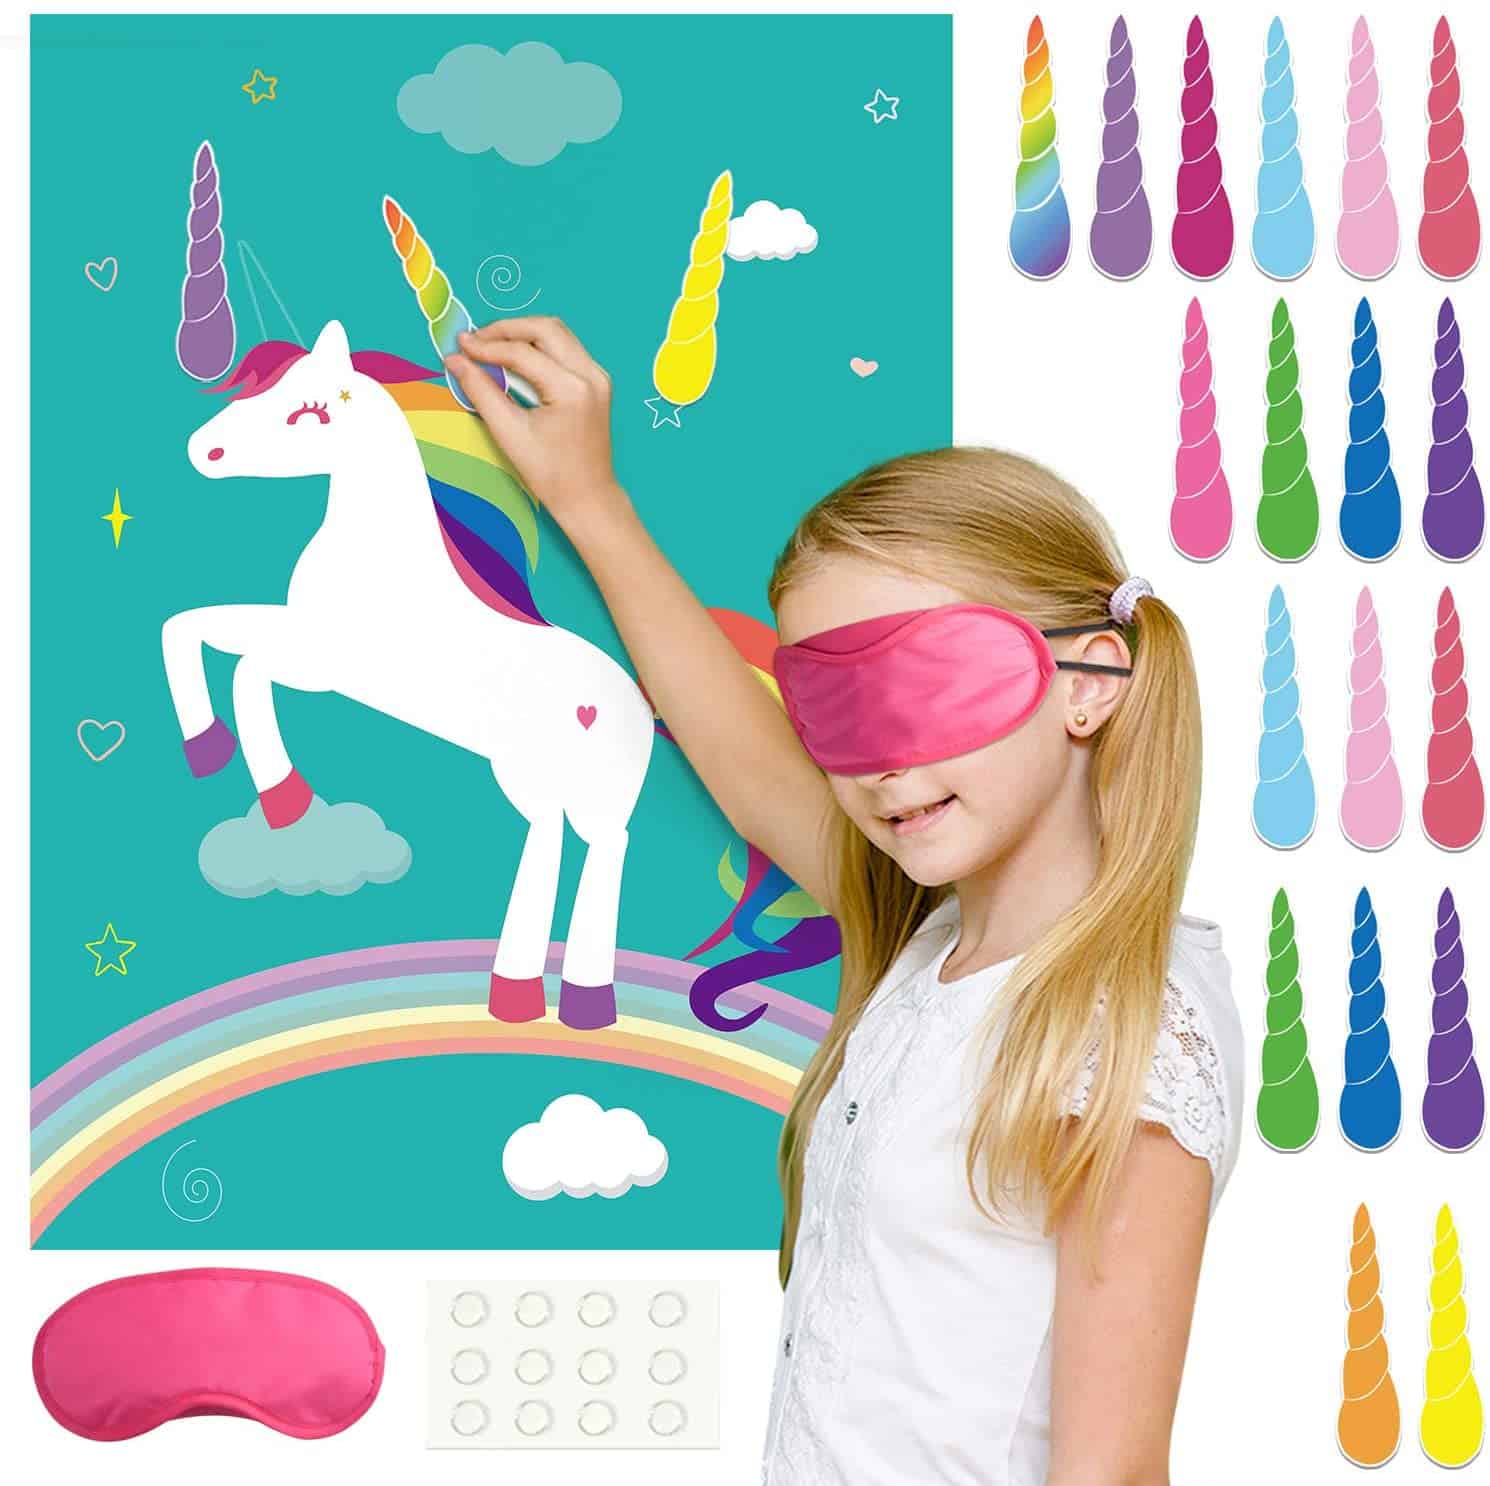 unicorn-party-ideas-game